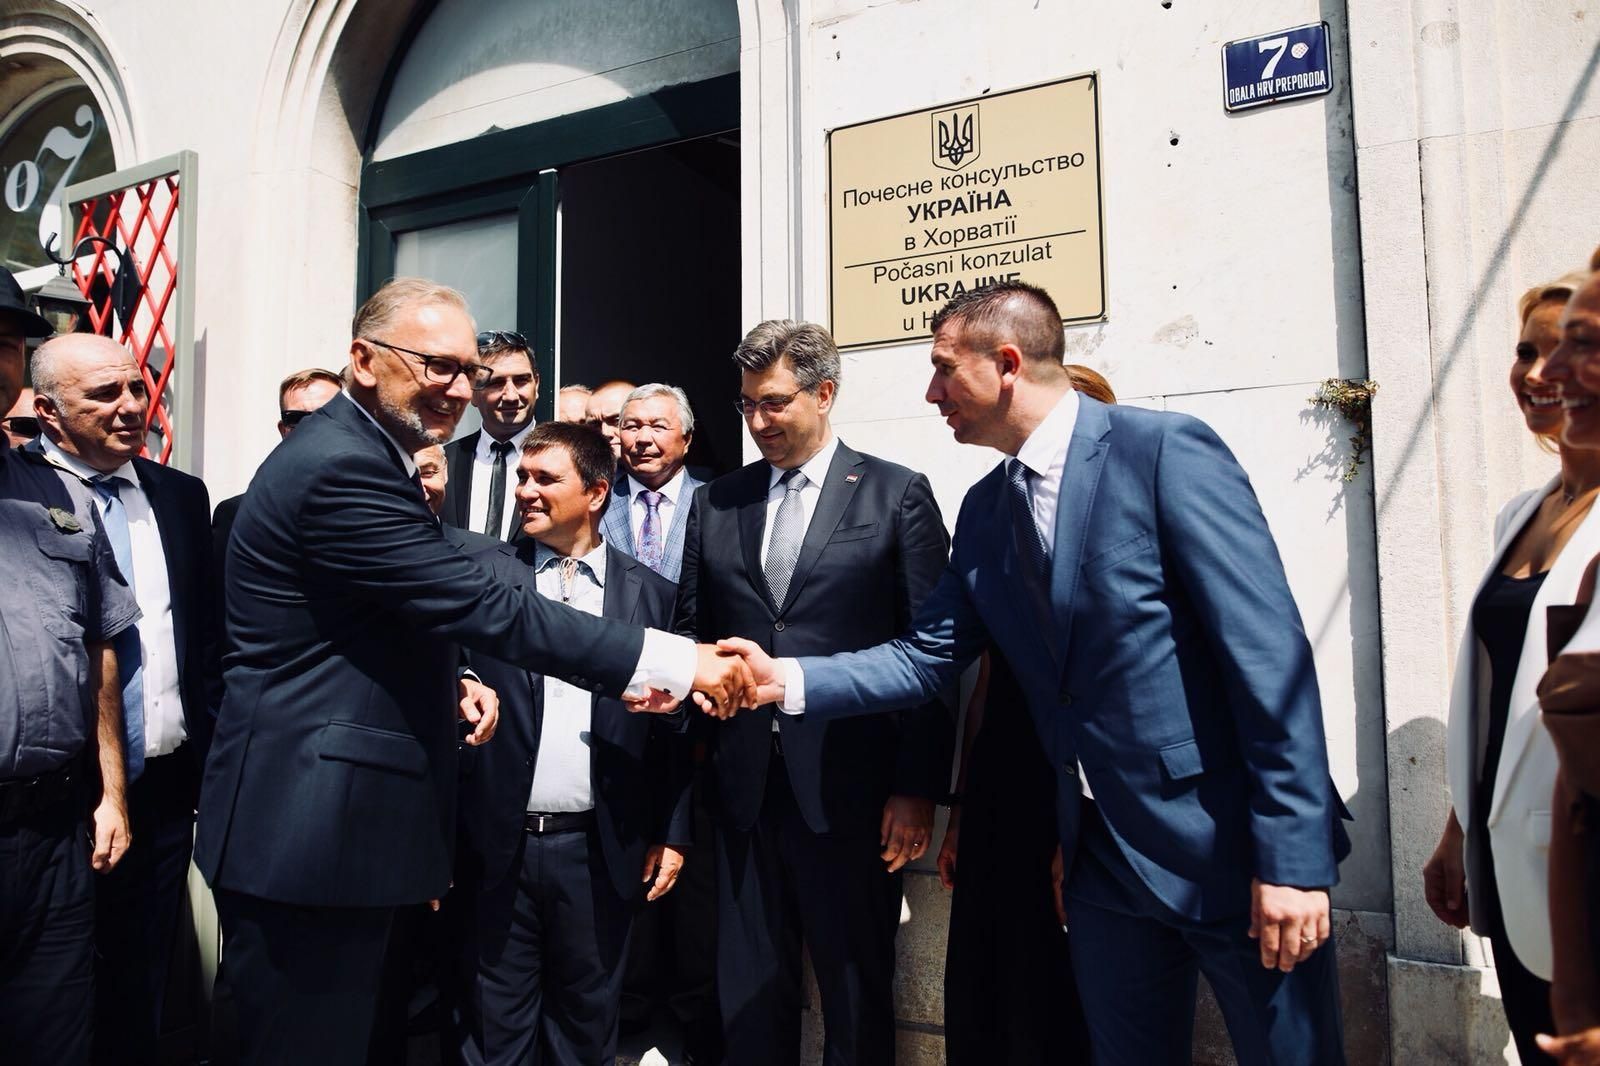 В Хорватии открыли почетное консульство Украины